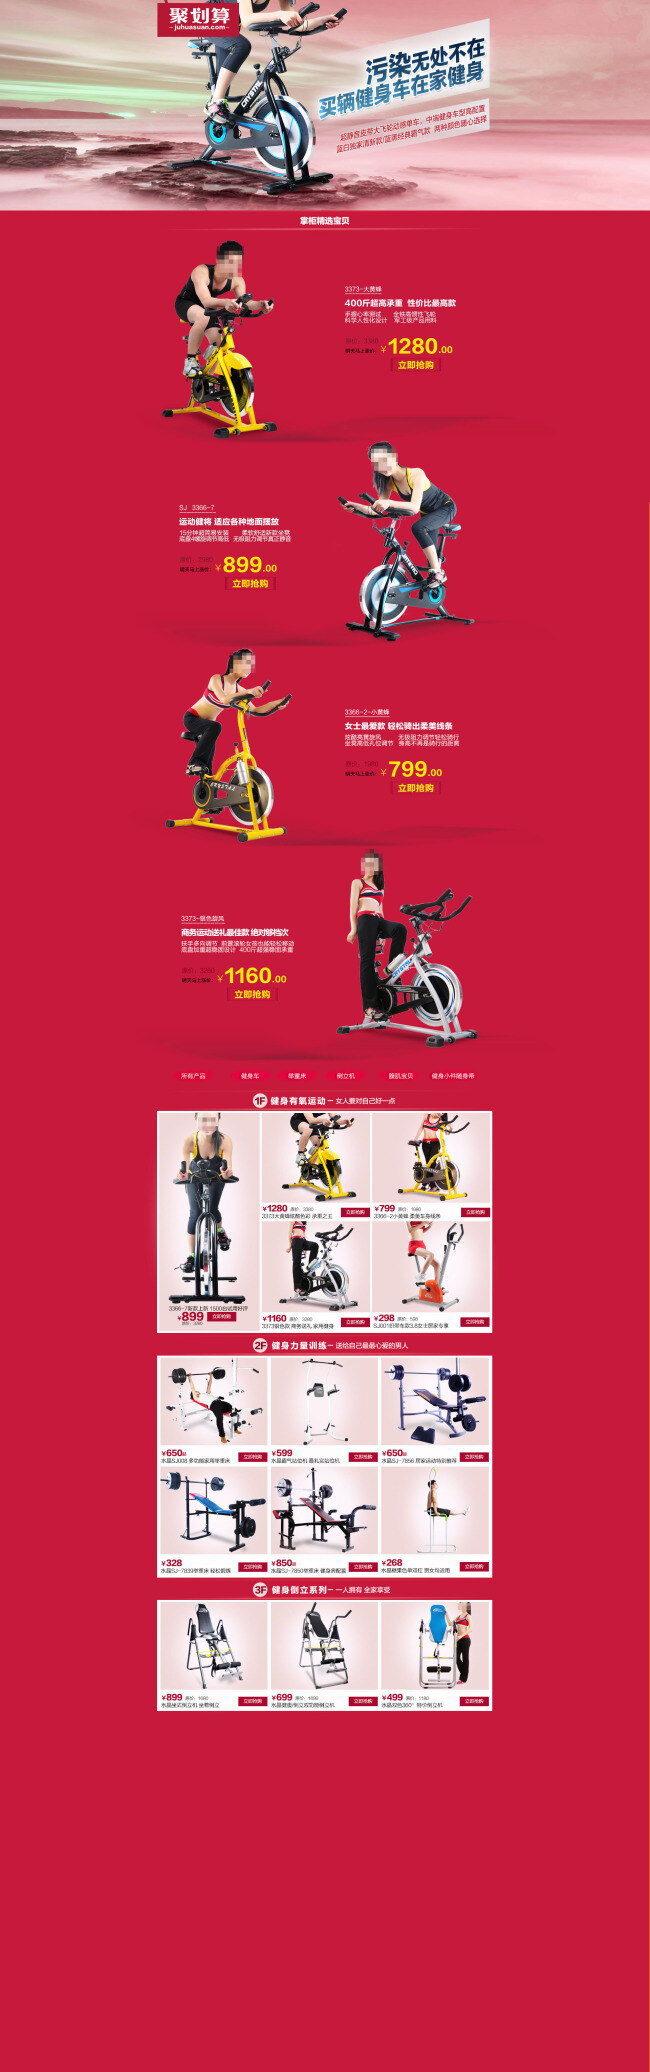 品牌 家居 健身器材 海报 运动器材 促销 店铺活动海报 淘宝海报 天猫海报 红色